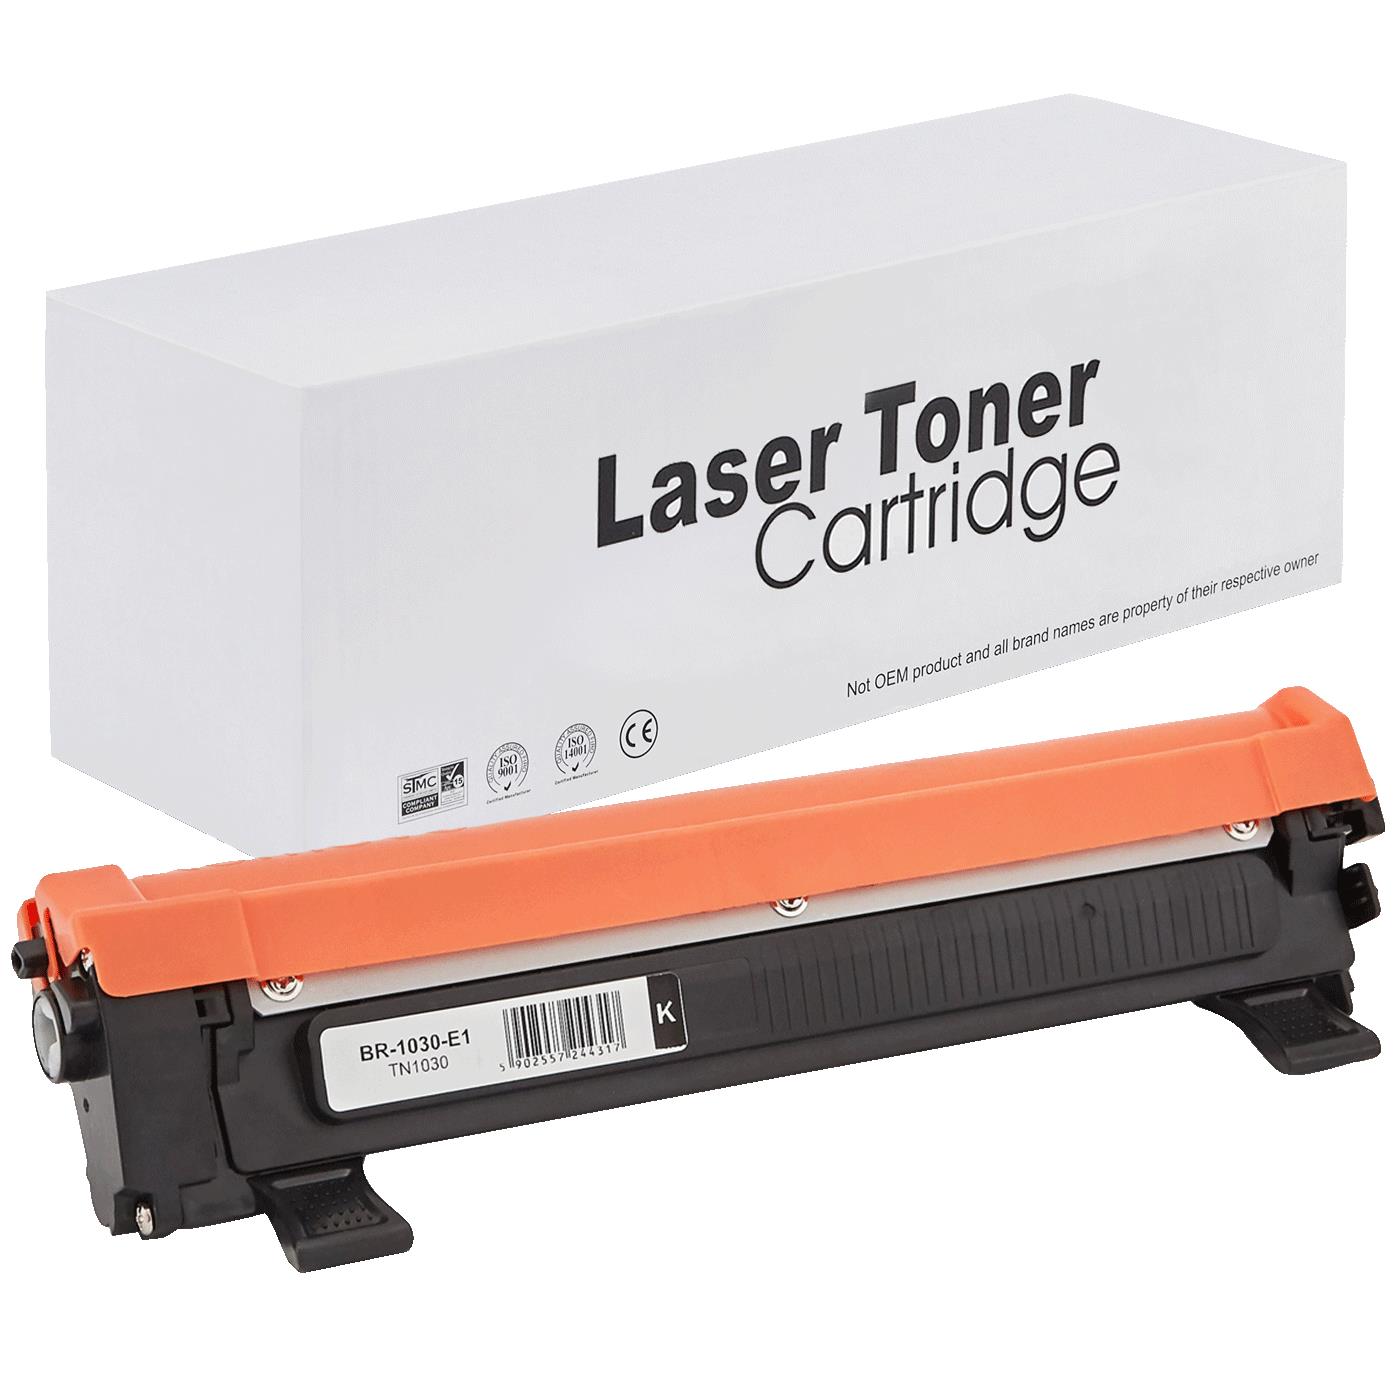 съвместима тонер касета за принтери и печатащи устройства на Brother 1512R Toner BR-1030 | TN1030 / TN1050 / TN-1030. Ниски цени, прецизно изпълнение, високо качество.